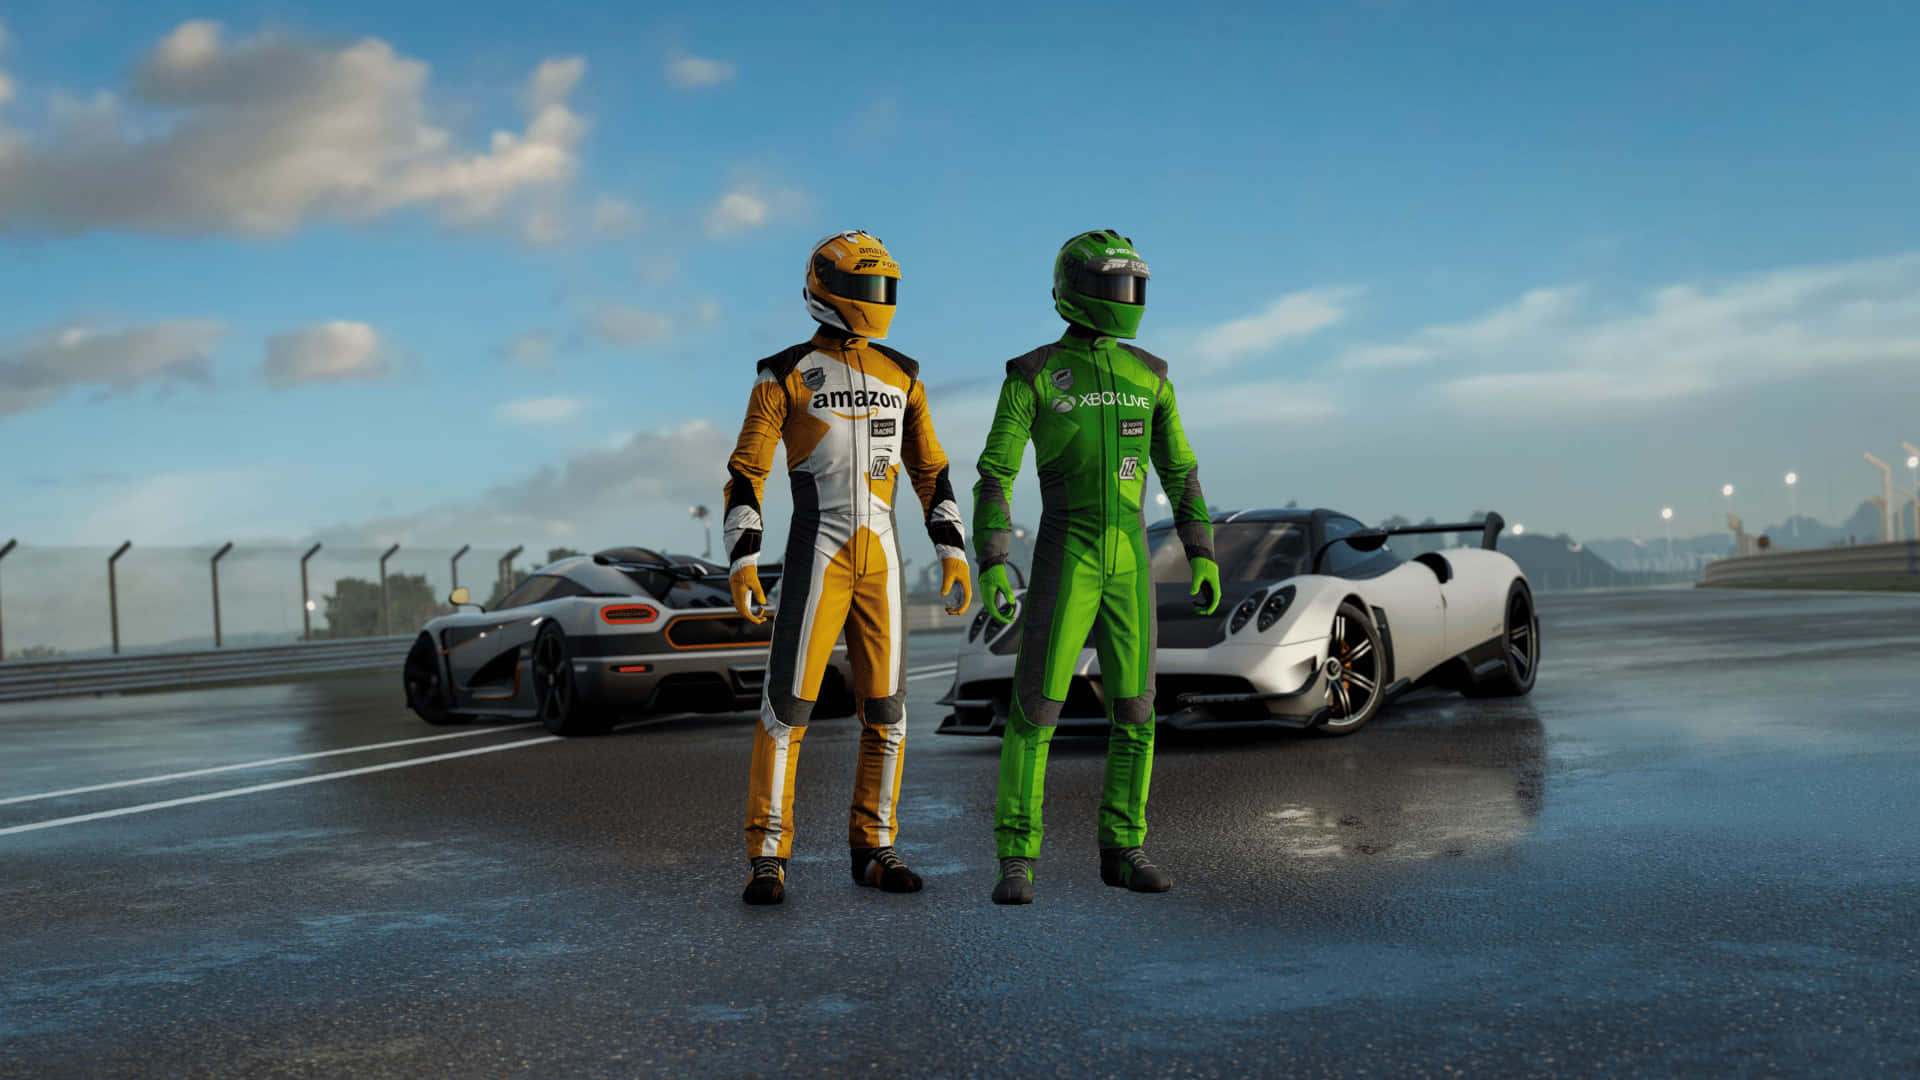 Preparatiall'azione In Forza Motorsport 7